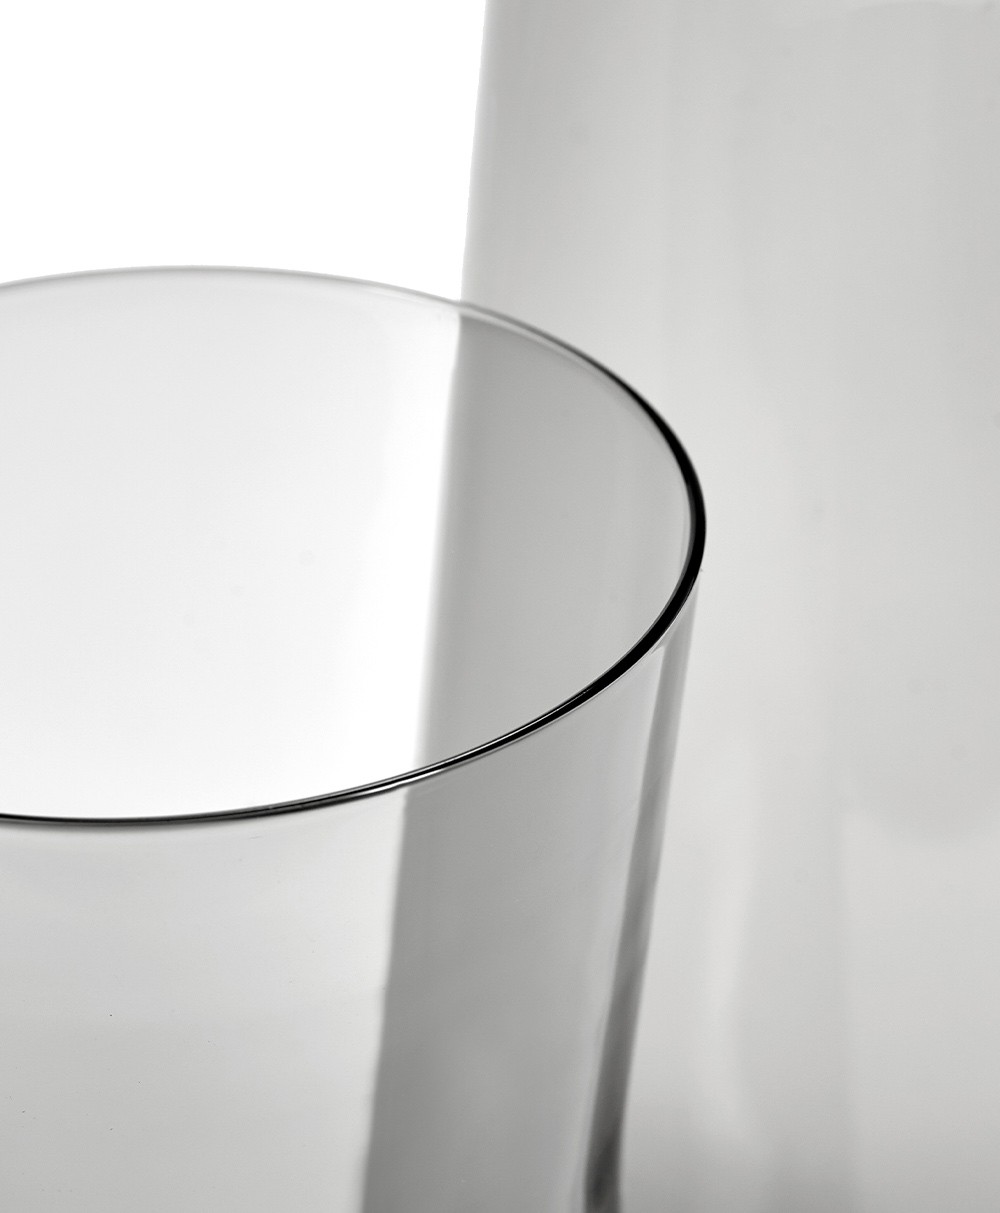 Detailbild der Karaffen CENA aus Glas in smoky grey von Serax aus der Kollektion von Vincent Van Duysen im RAUM concept store